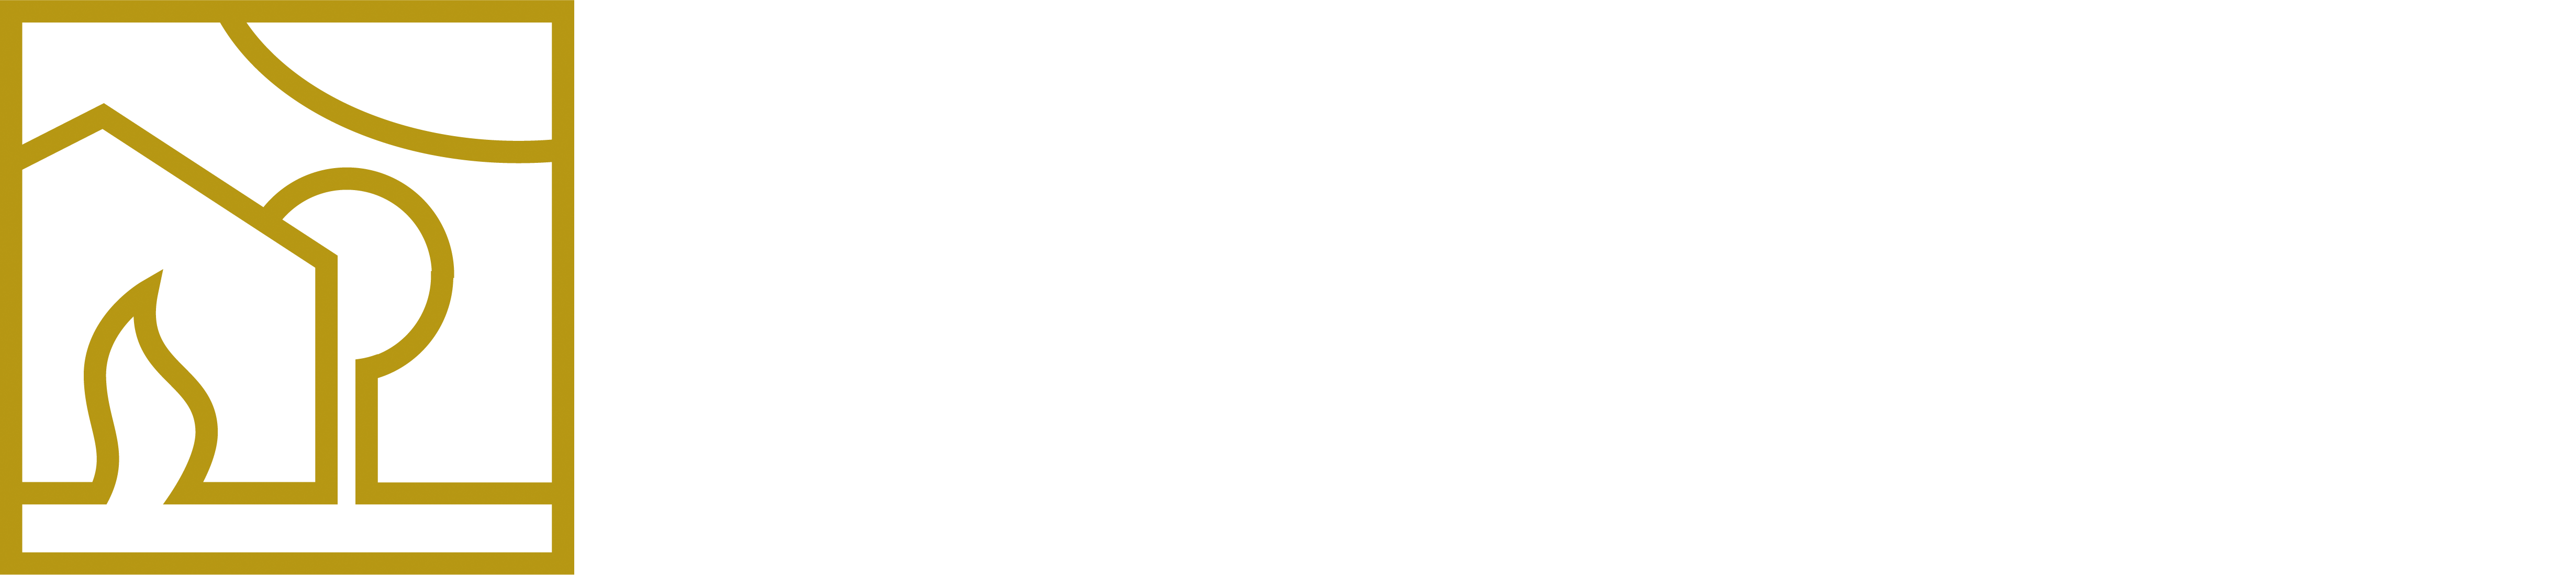 Shop Nothaft Heiztechnik GmbH